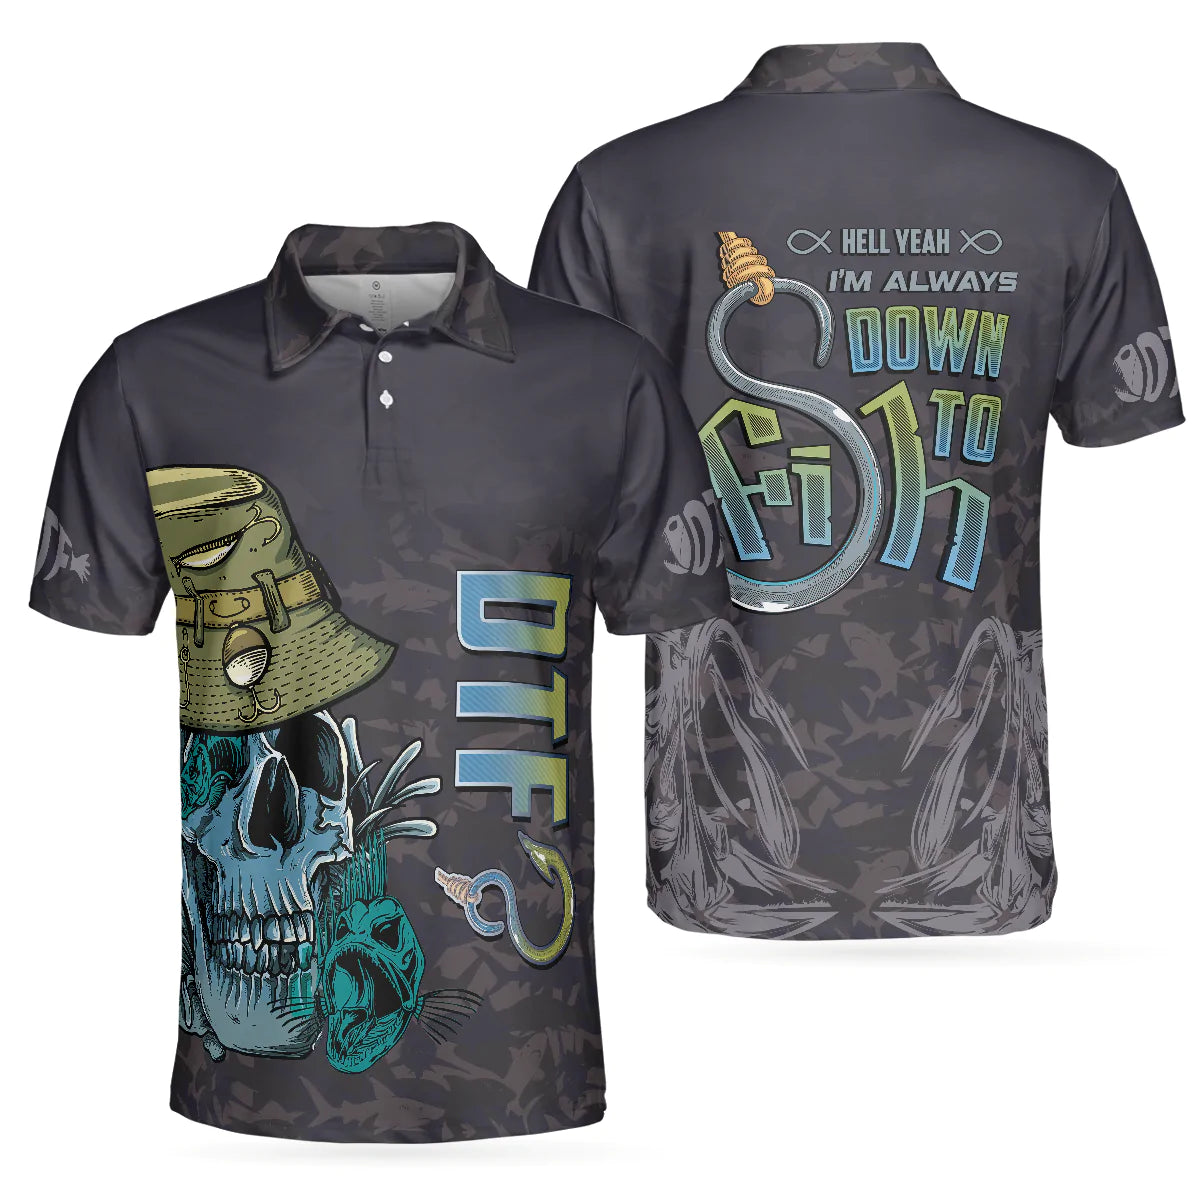 Black Skull Fishing Men Polo Shirt, I'm Always DTF Down to Fish Fishing Polo Shirt, Best Fishing Shirt for Men